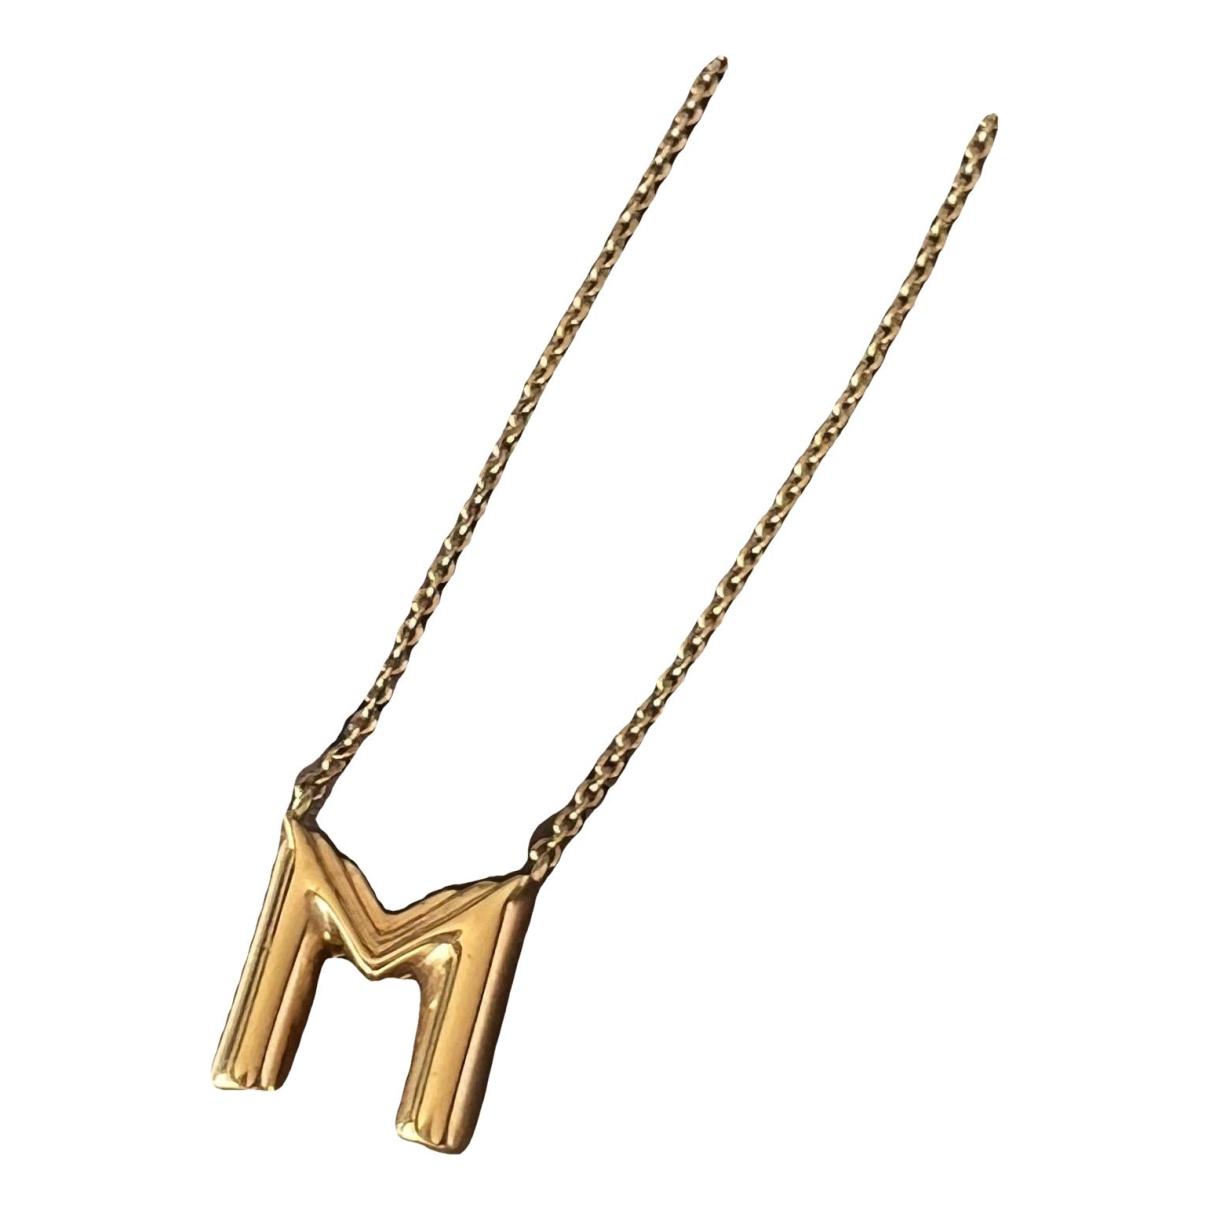 Louis Vuitton Gold Tone LV & Me Letter M Pendant Necklace Louis Vuitton